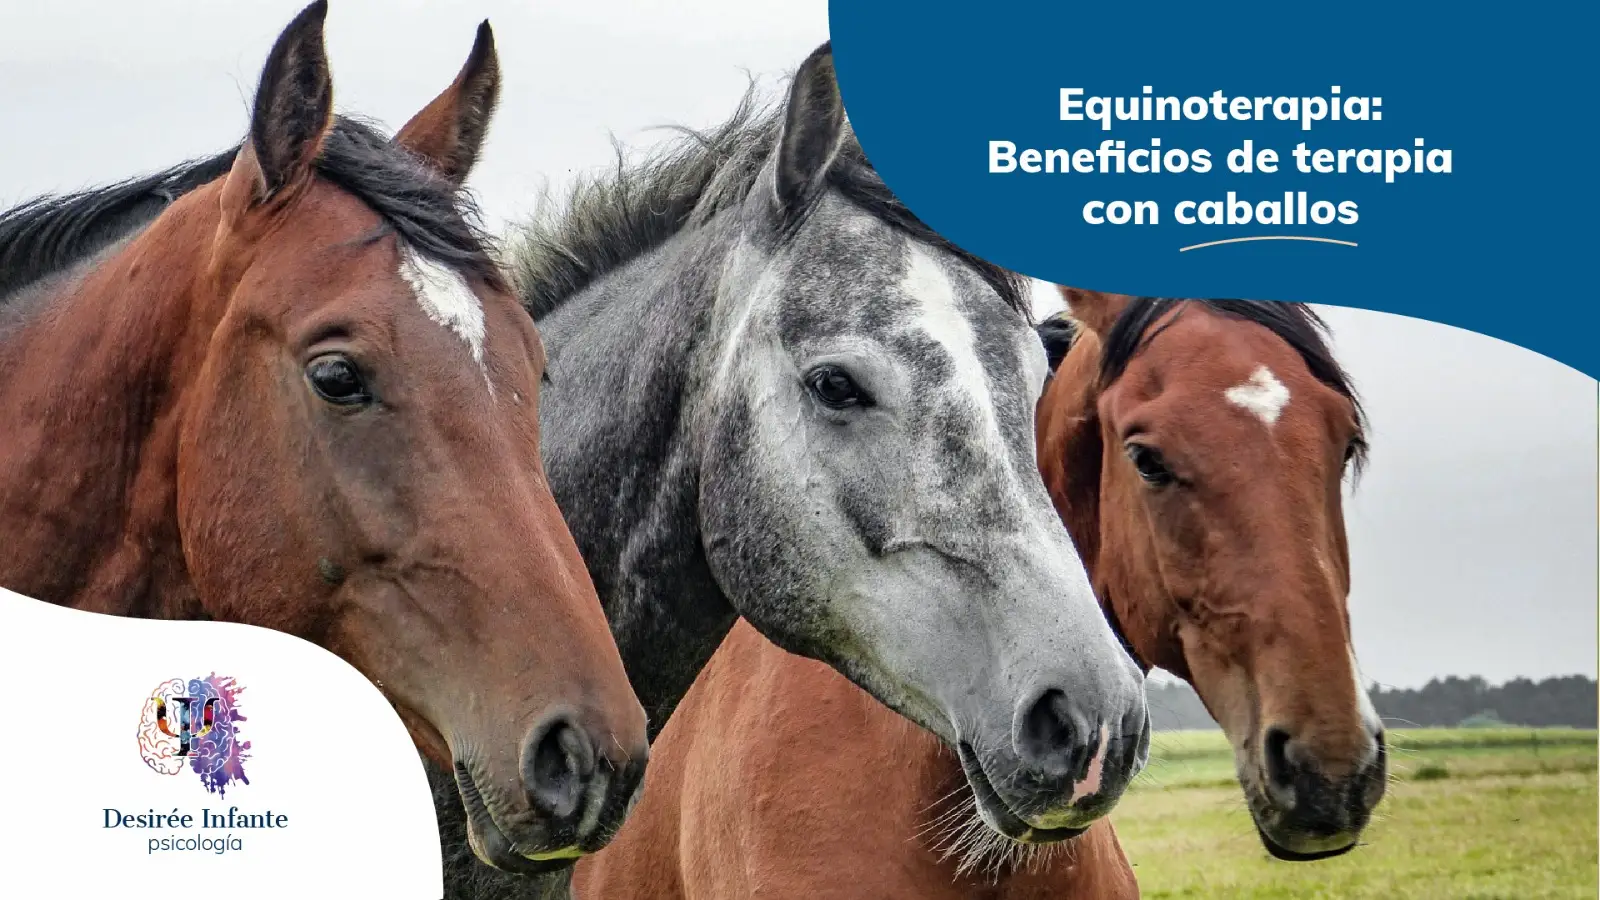 equinoterapia: terapias con caballos